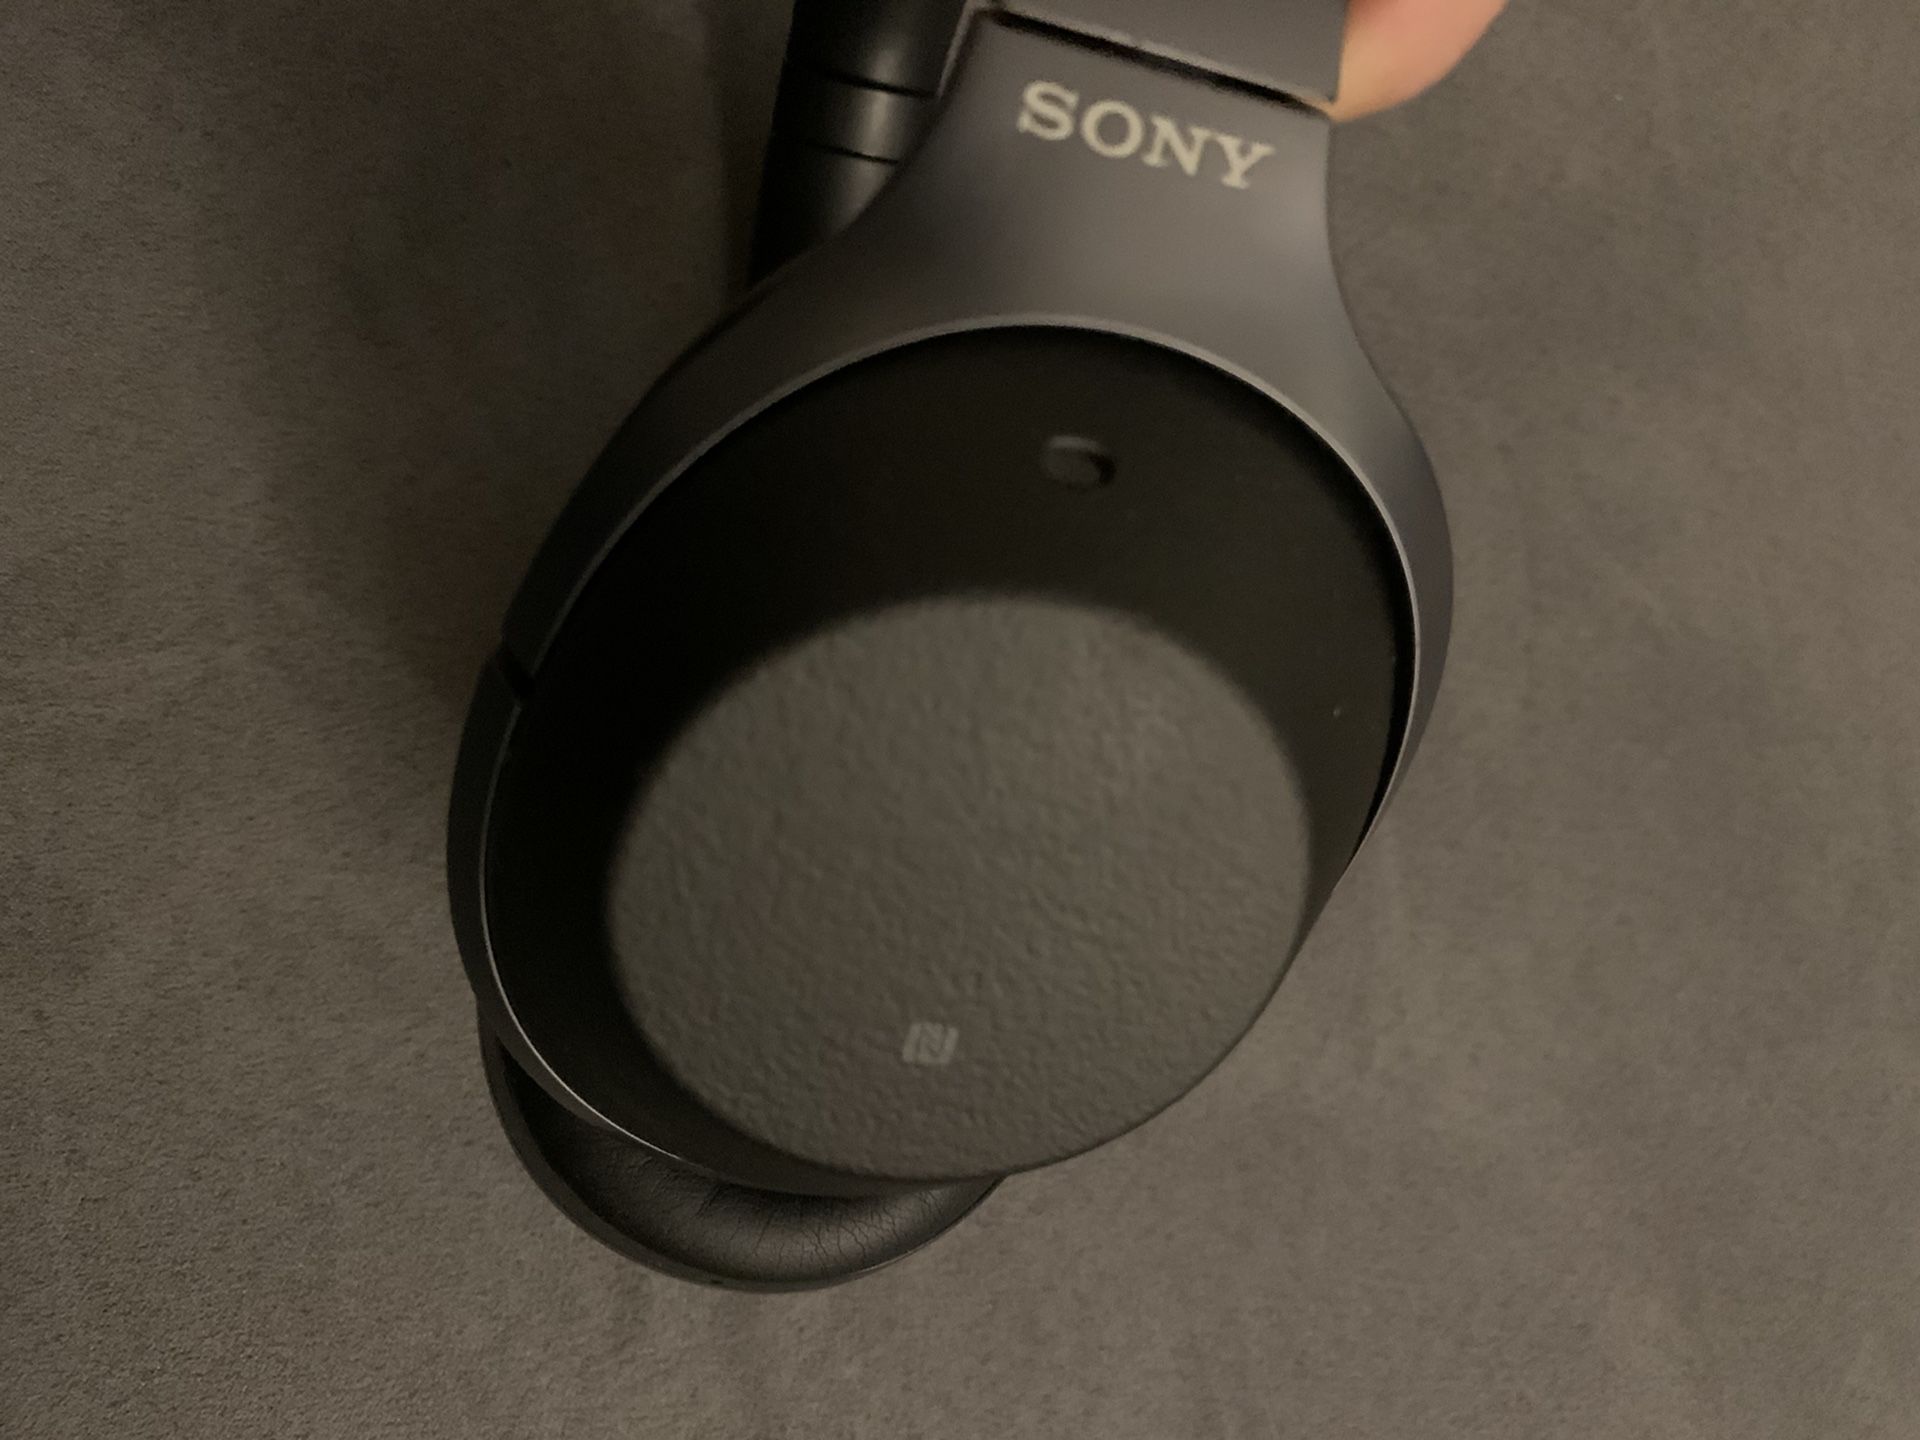 Sony Headphone